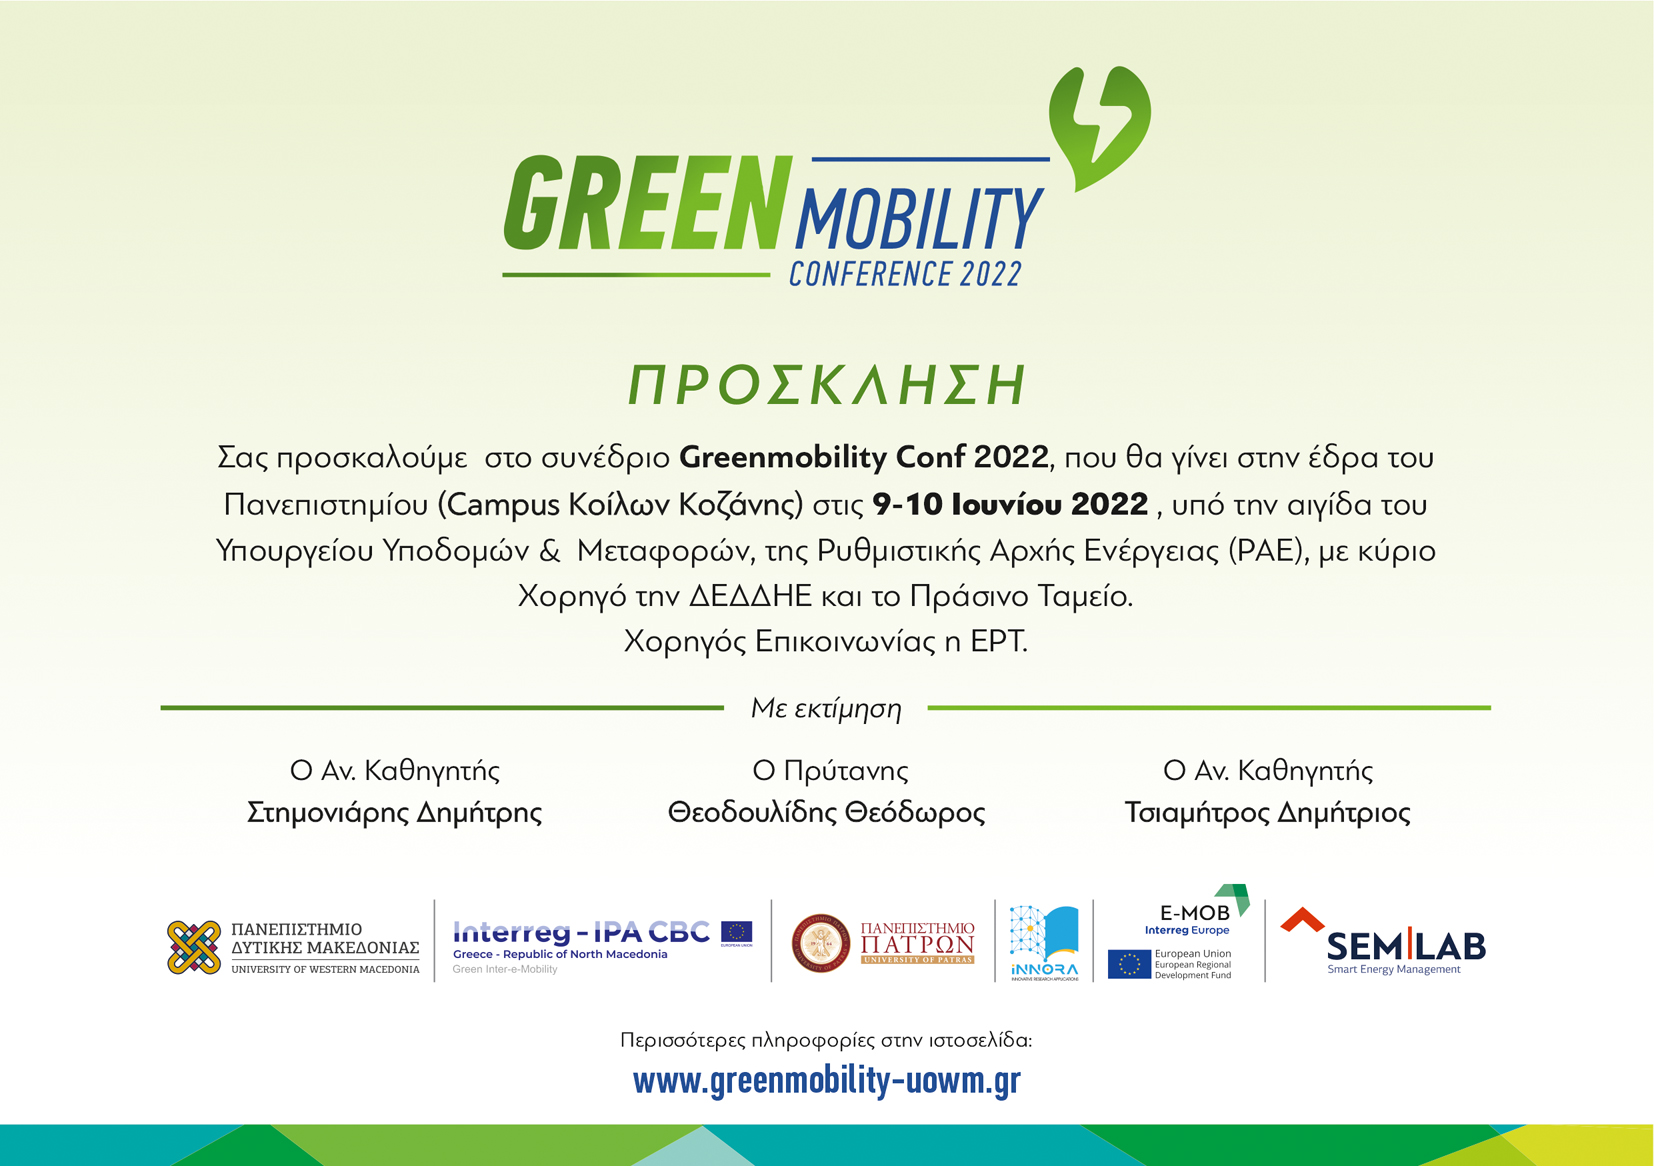 Πανεπιστήμιο Δυτικής Μακεδονίας: Διεθνές Συνέδριο Greenmobility 2022, την Πέμπτη 9 και Παρασκευή 10 Ιουνίου